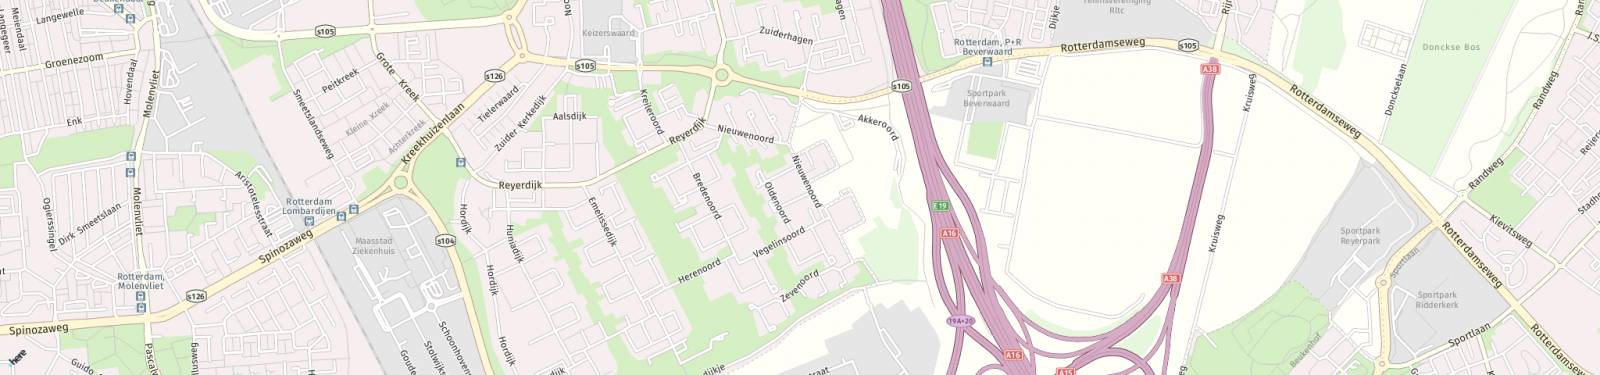 Kaart met locatie Kamer Nieuwenoord